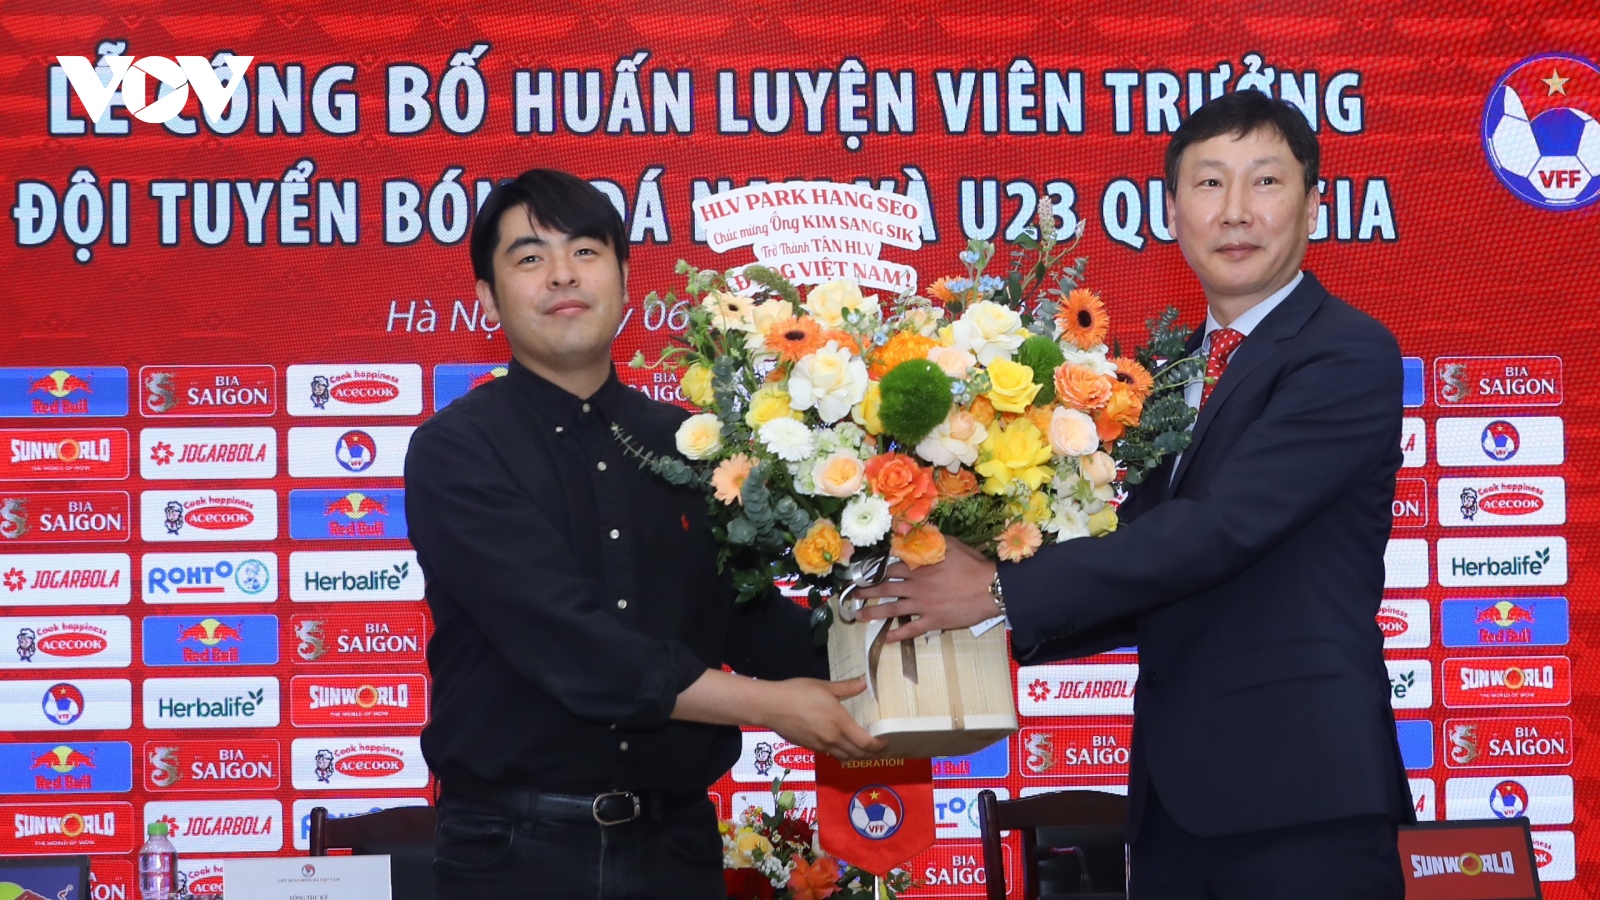 HLV Kim Sang Sik nhận quà từ HLV Park Hang Seo trong ngày ký hợp đồng với VFF